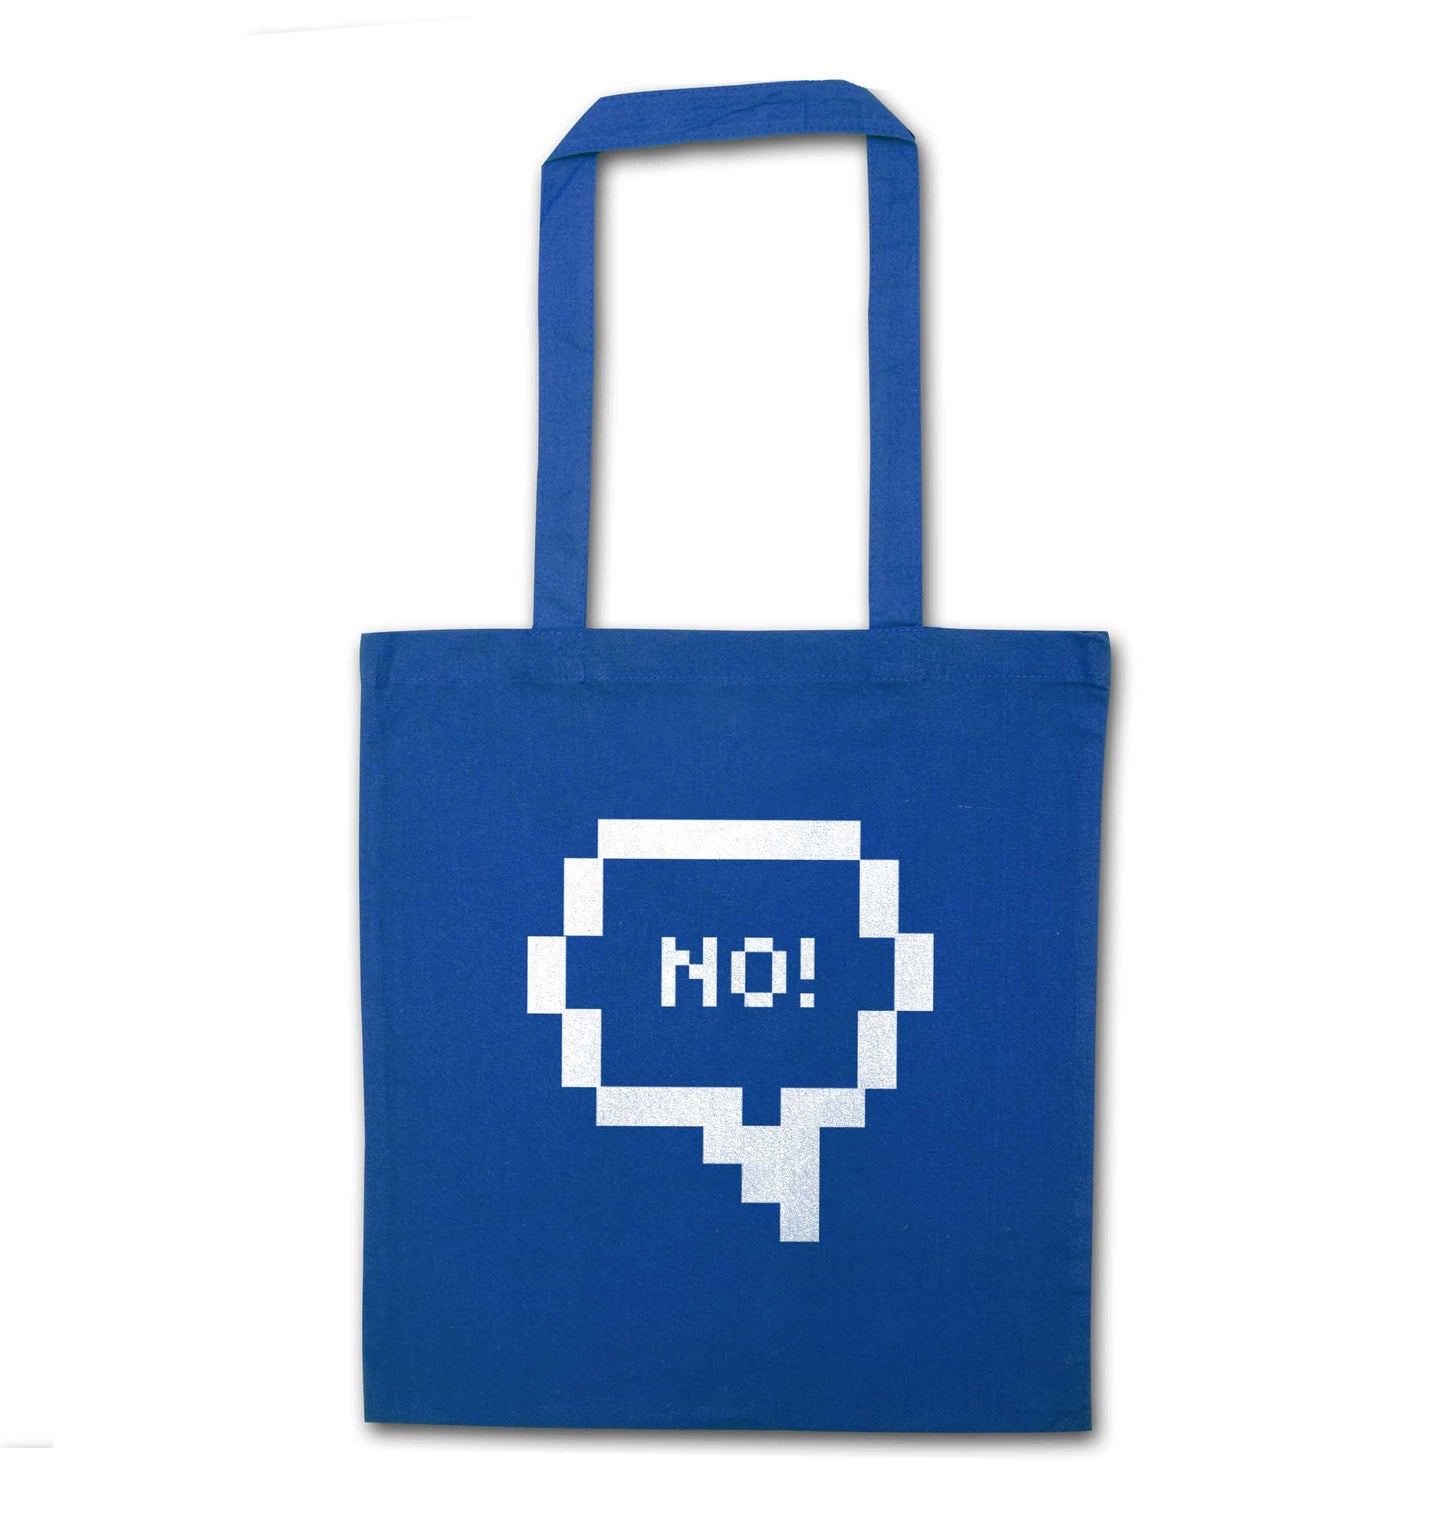 No blue tote bag